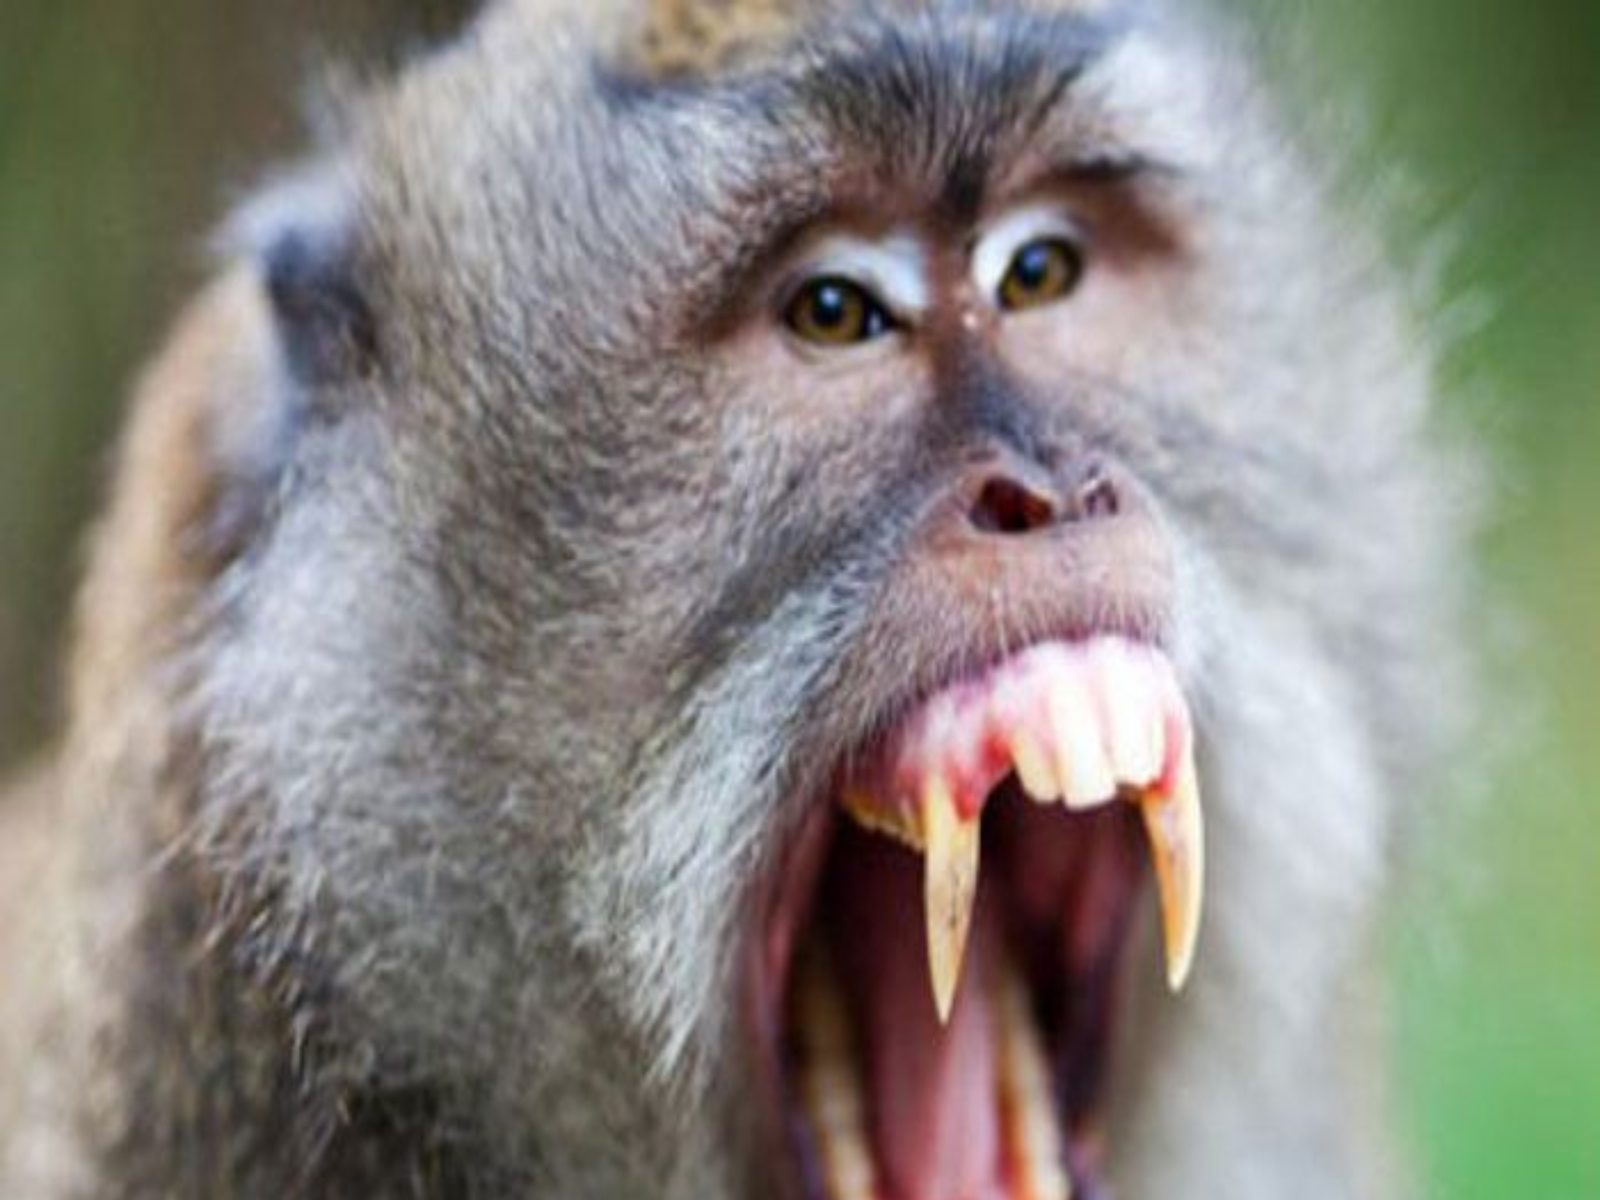 शख्स ने बंदर को पकड़वा कर जंगल भिजवाया, बदला लेने 22 km दूर से लौट आया वानर - interesting news monkey returned from 22 km just to take revenge from man sankri – News18 हिंदी